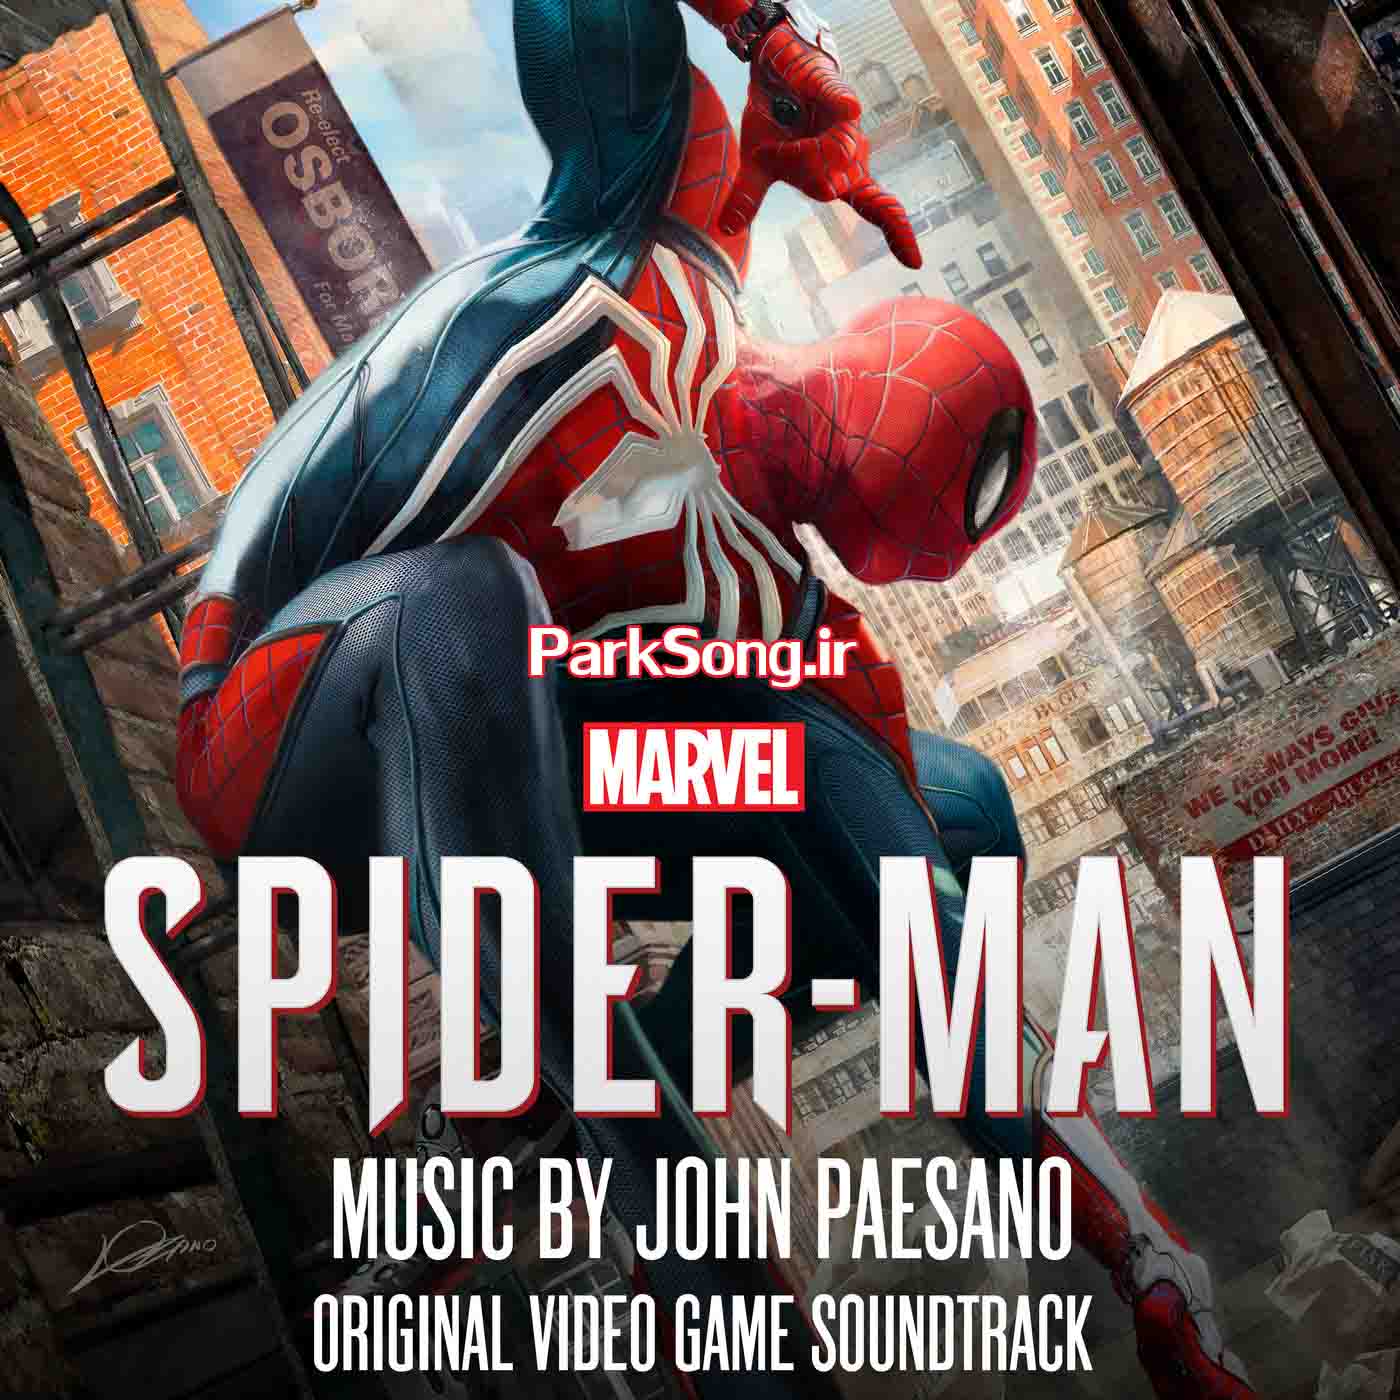 دانلود آلبوم موسیقی بازی انحصاری Marvel's Spider Man